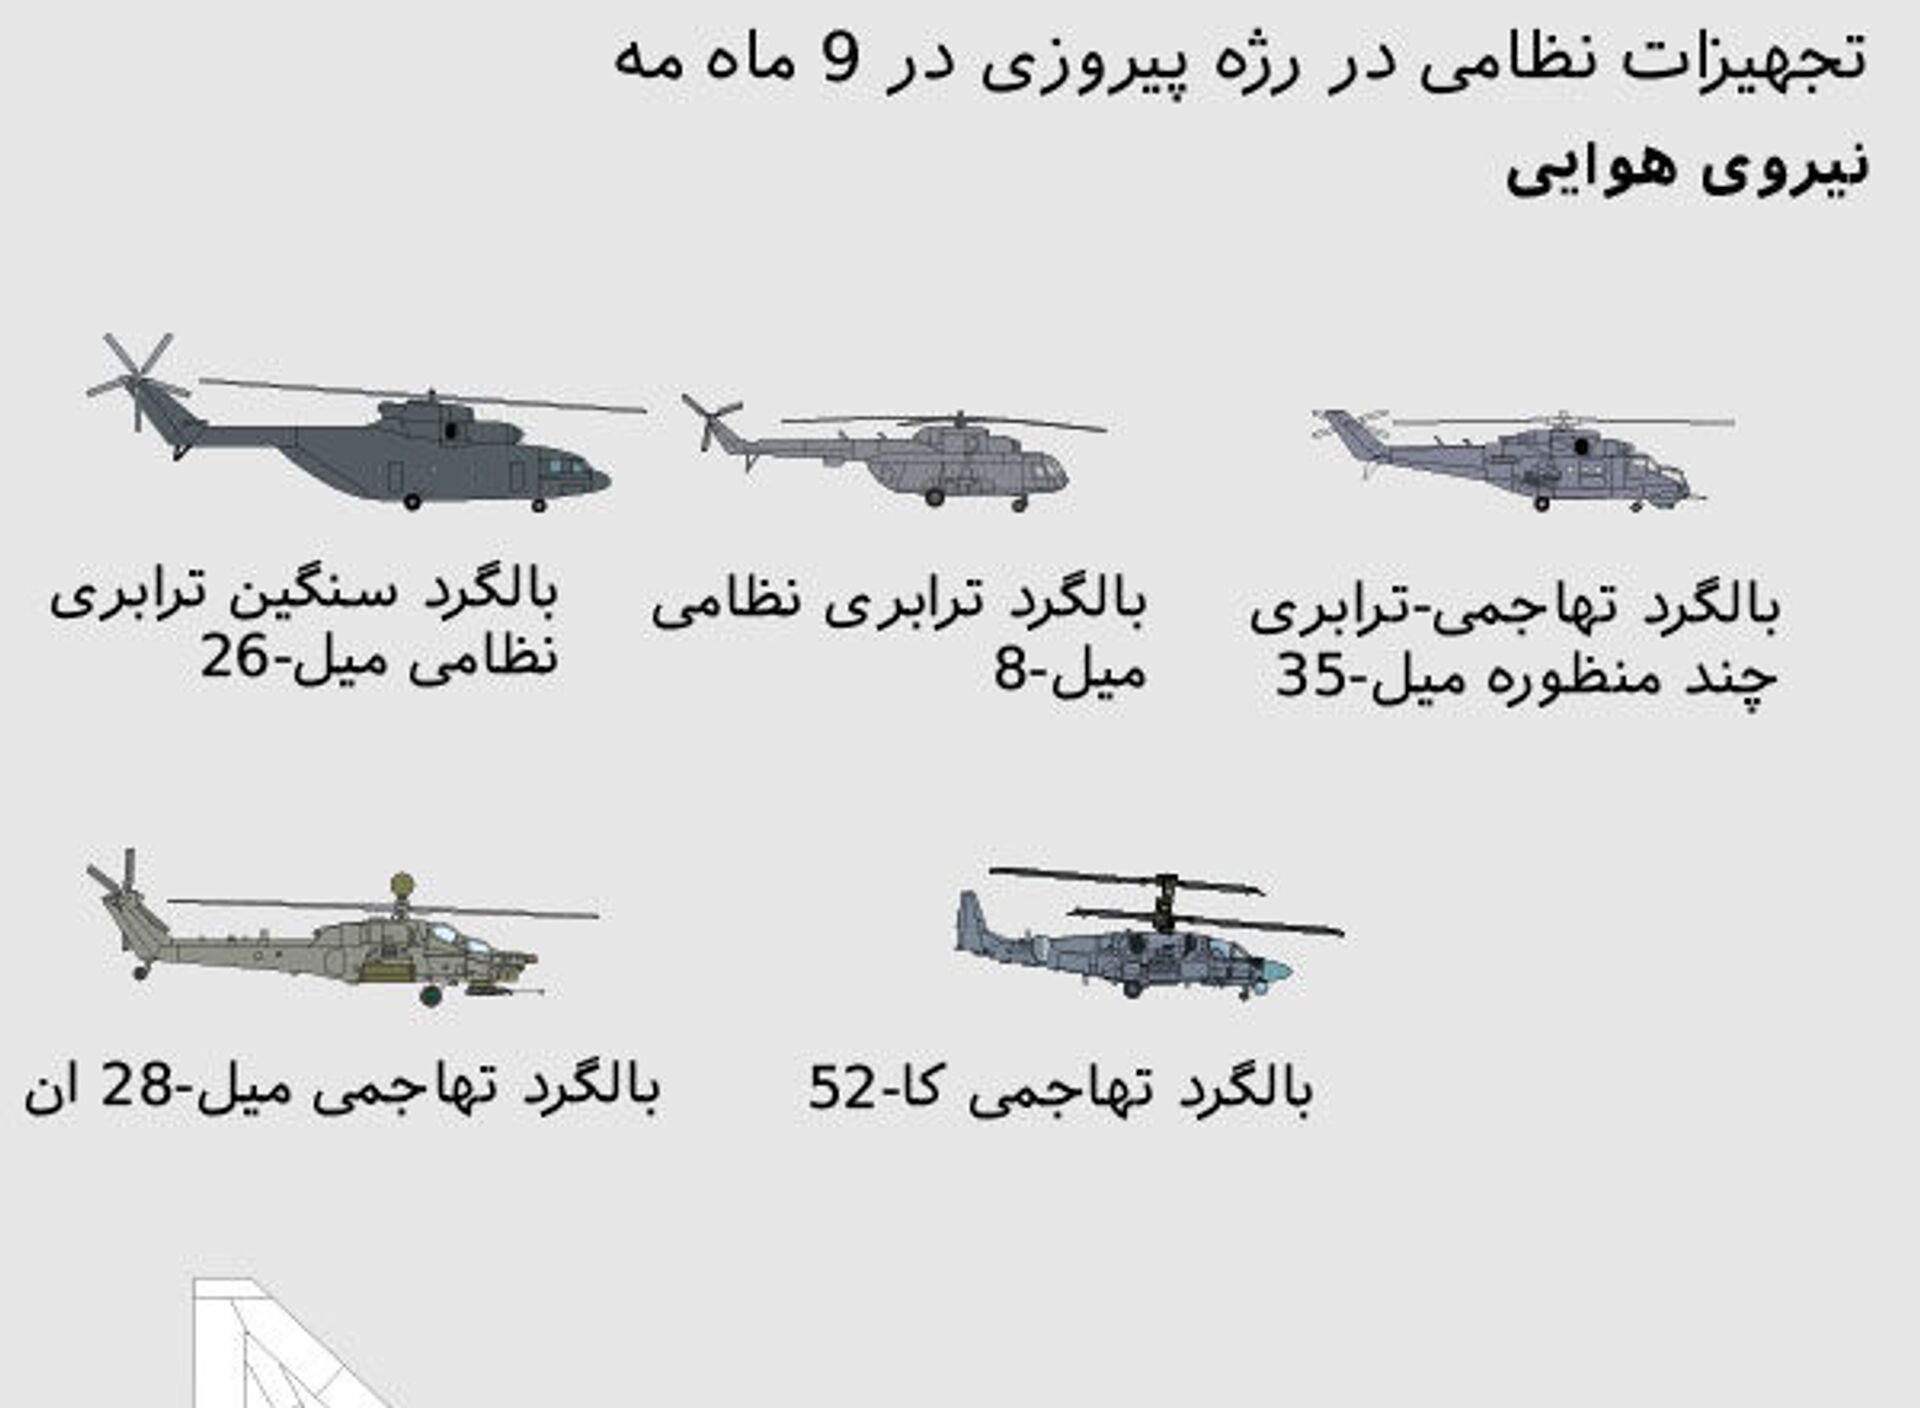 هواپیماها و بالگردها در رژه 76-مین سالگرد پیروزی در جنگ جهانی دوم + داده نمایی - اسپوتنیک ایران  , 1920, 09.05.2021